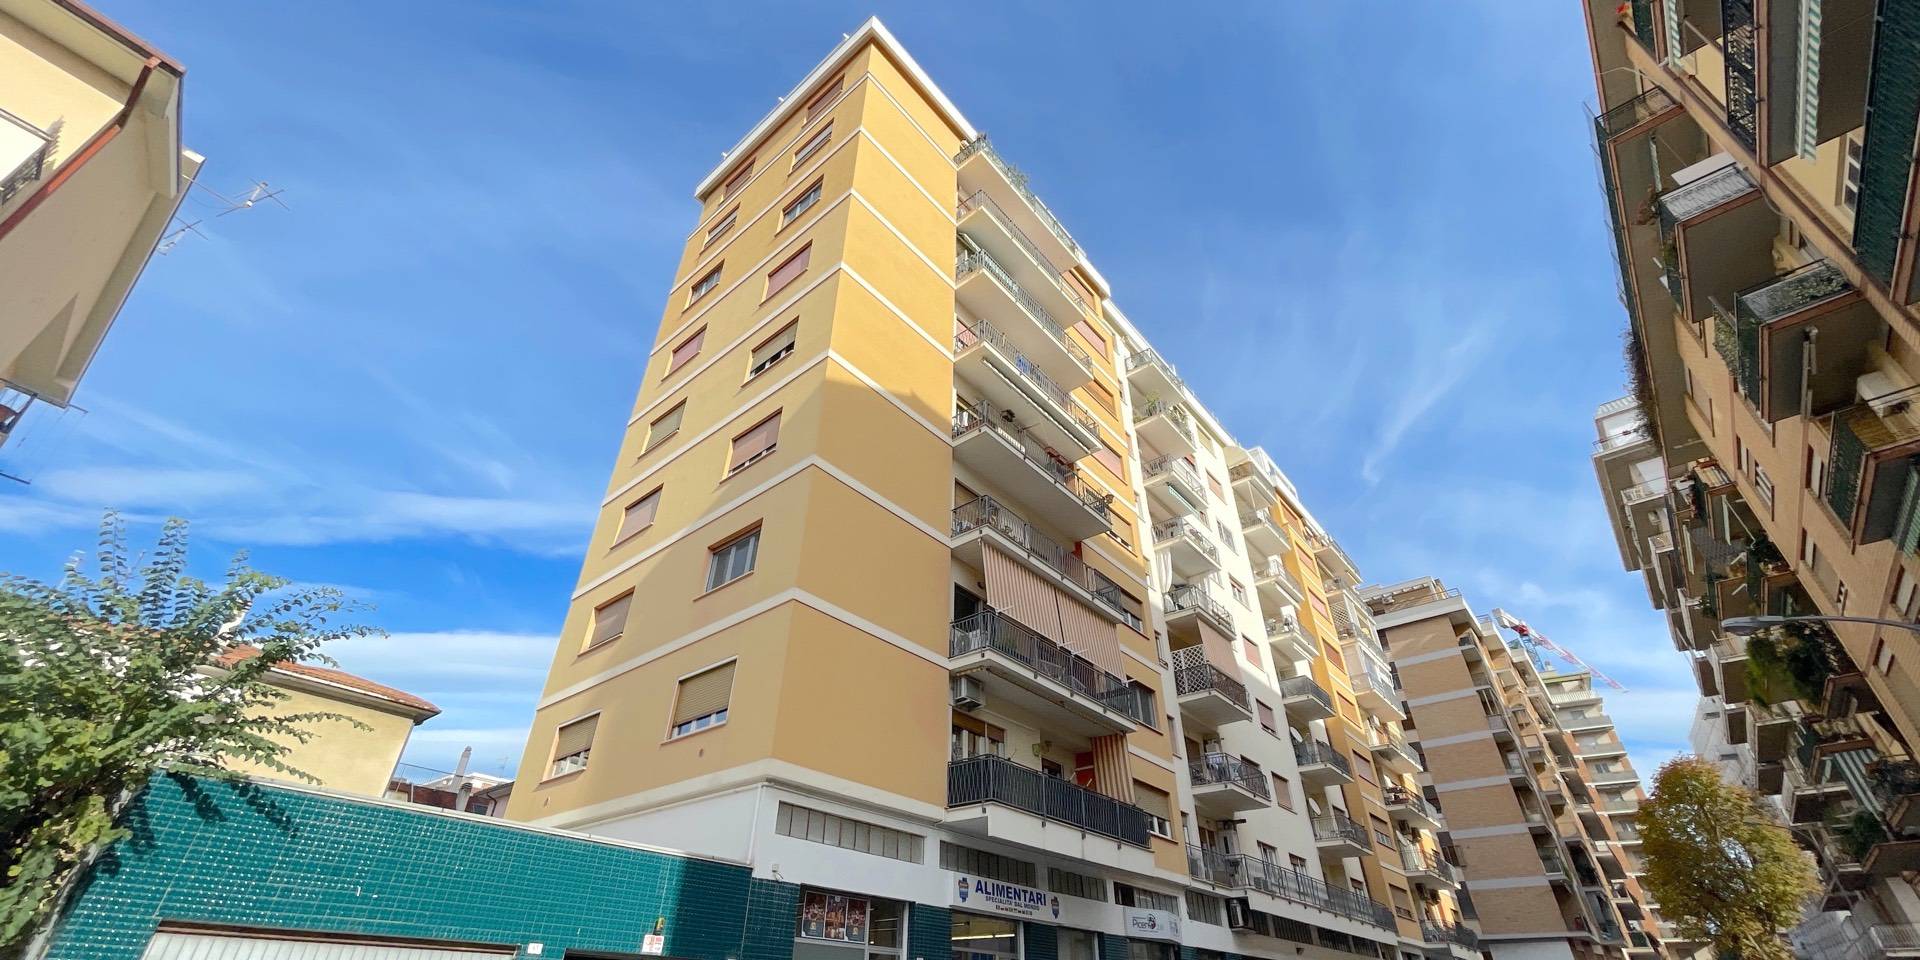 Appartamento con box, San Benedetto del Tronto residenziale sud